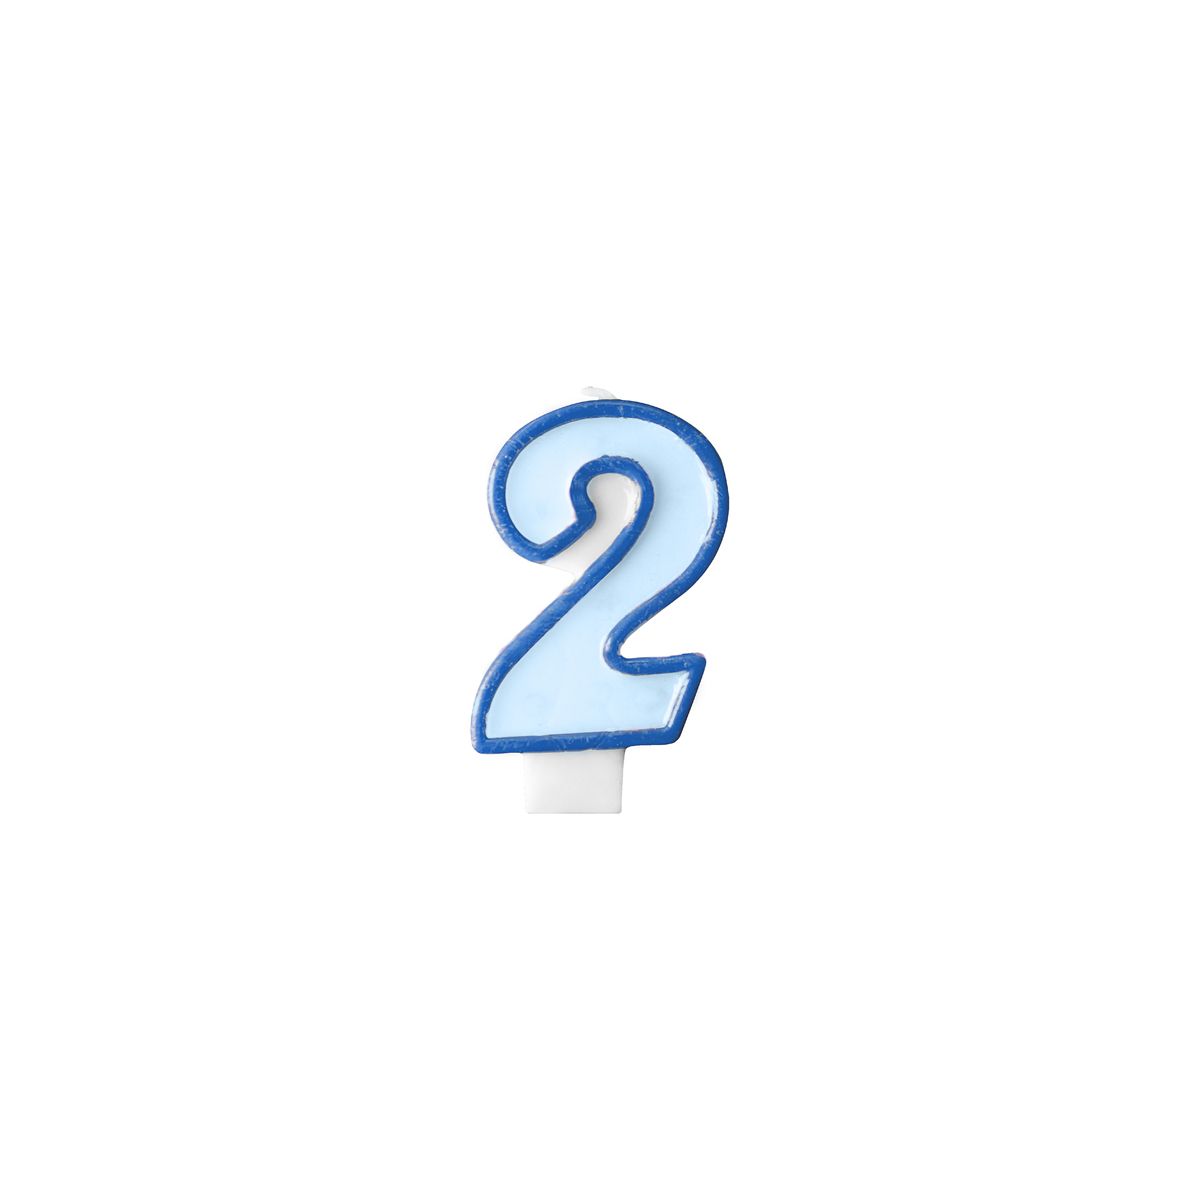 Świeczka urodzinowa Cyferka 2 w kolorze niebieskim 7 centymetrów Partydeco (SCU1-2-001)